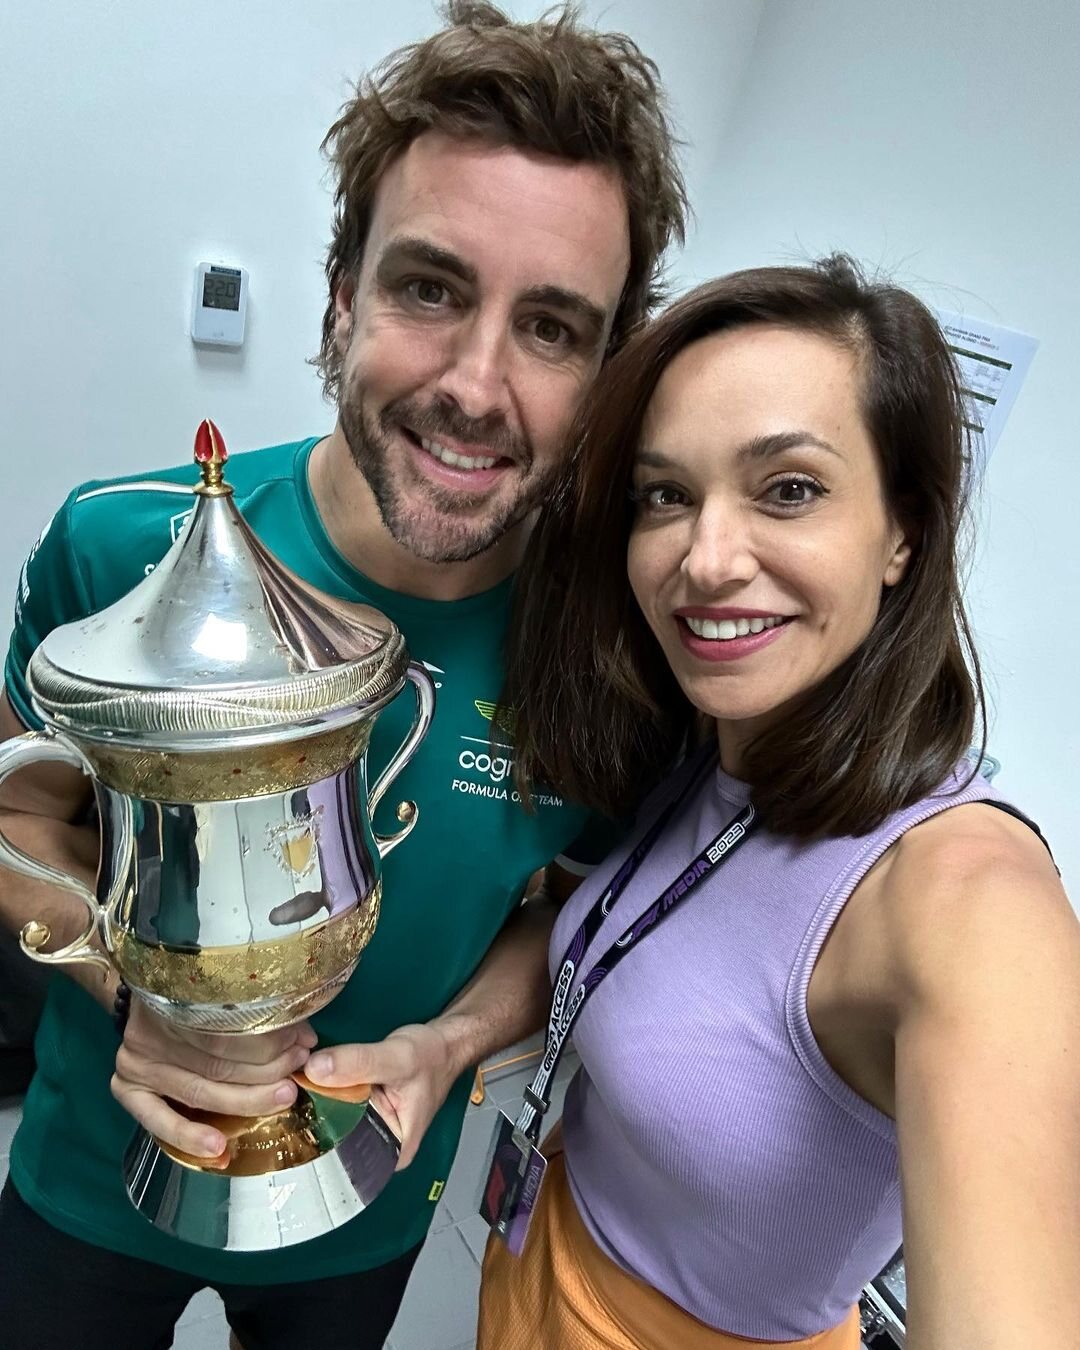 Fernando Alonso y su novia posando con el trofeo / Foto: Instagram